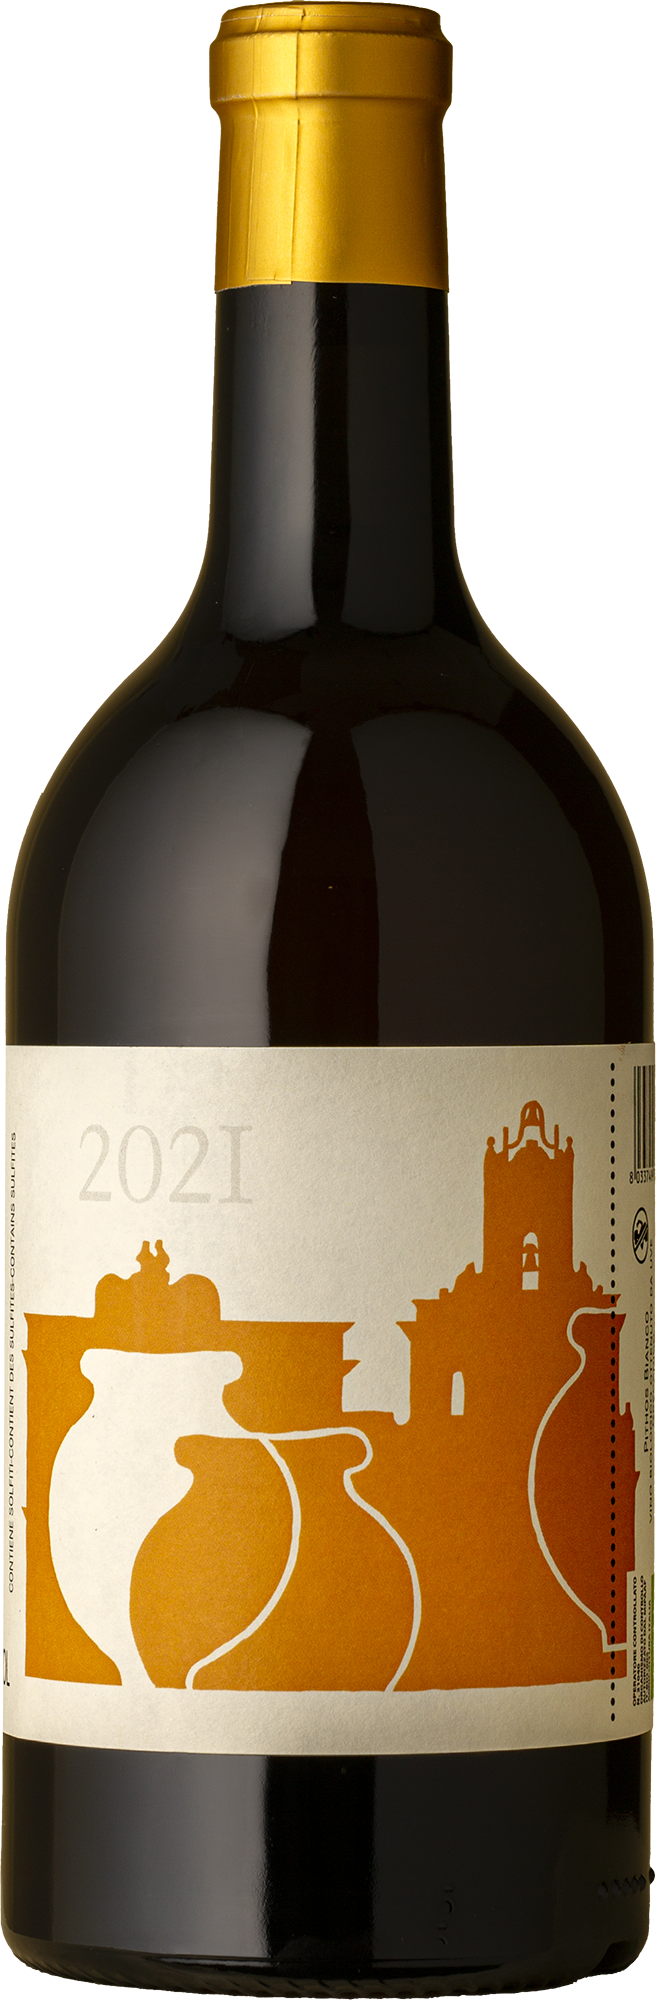 COS - Pithos Bianco White Blend 2021 Orange Wine